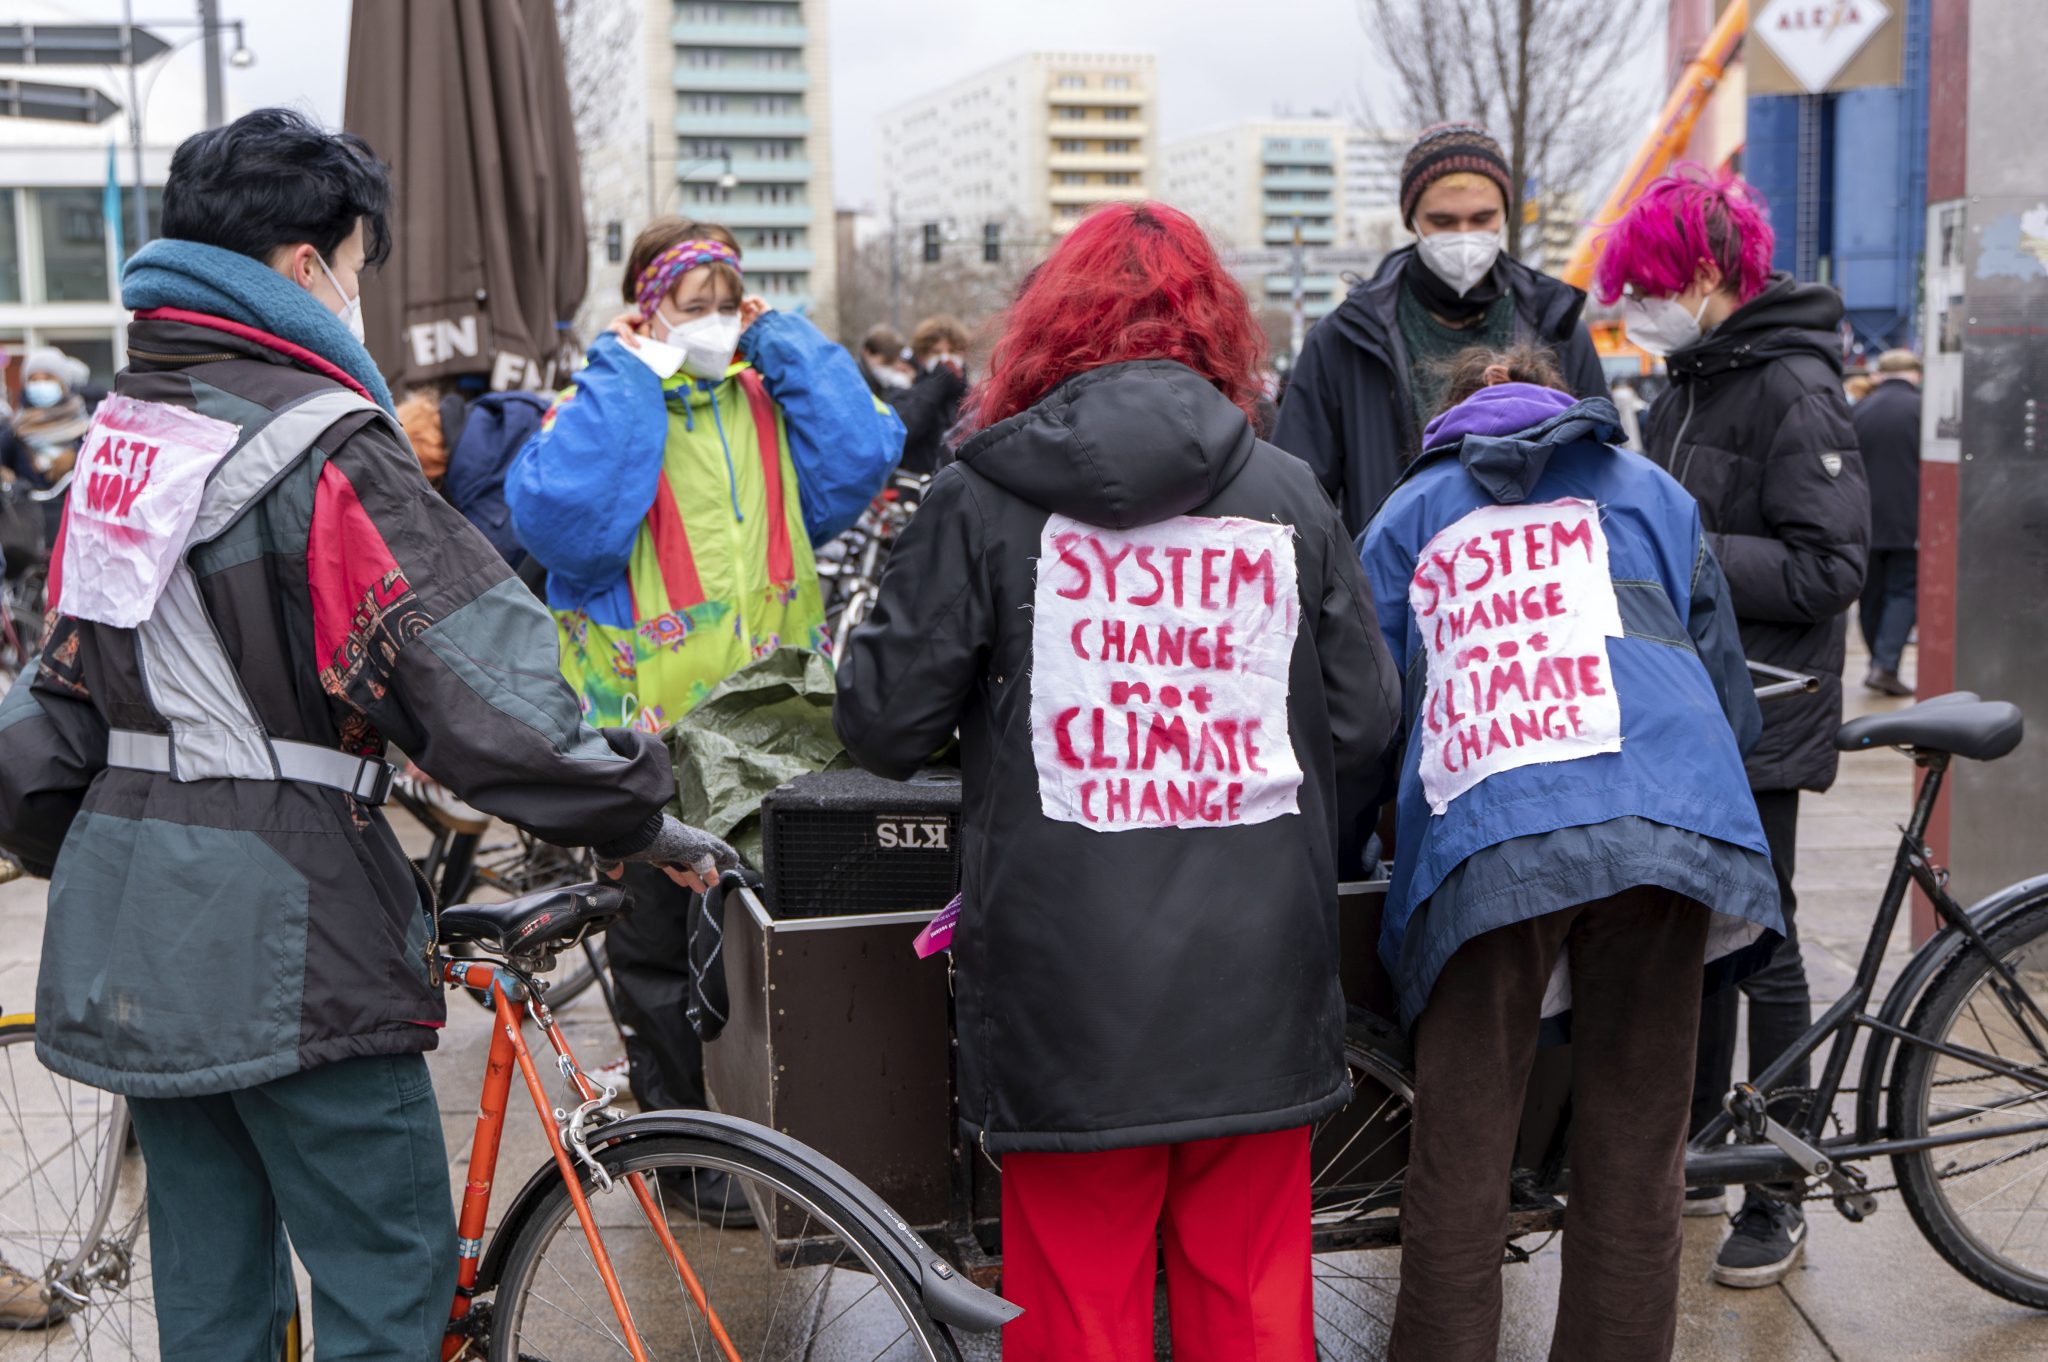 Teilnehmer einer Klima-Demonstration von "Ende Gelände" fordern den Systemwechsel Foto: picture alliance / Geisler-Fotopress | Varvara Smirnova/Geisler-Fotopre